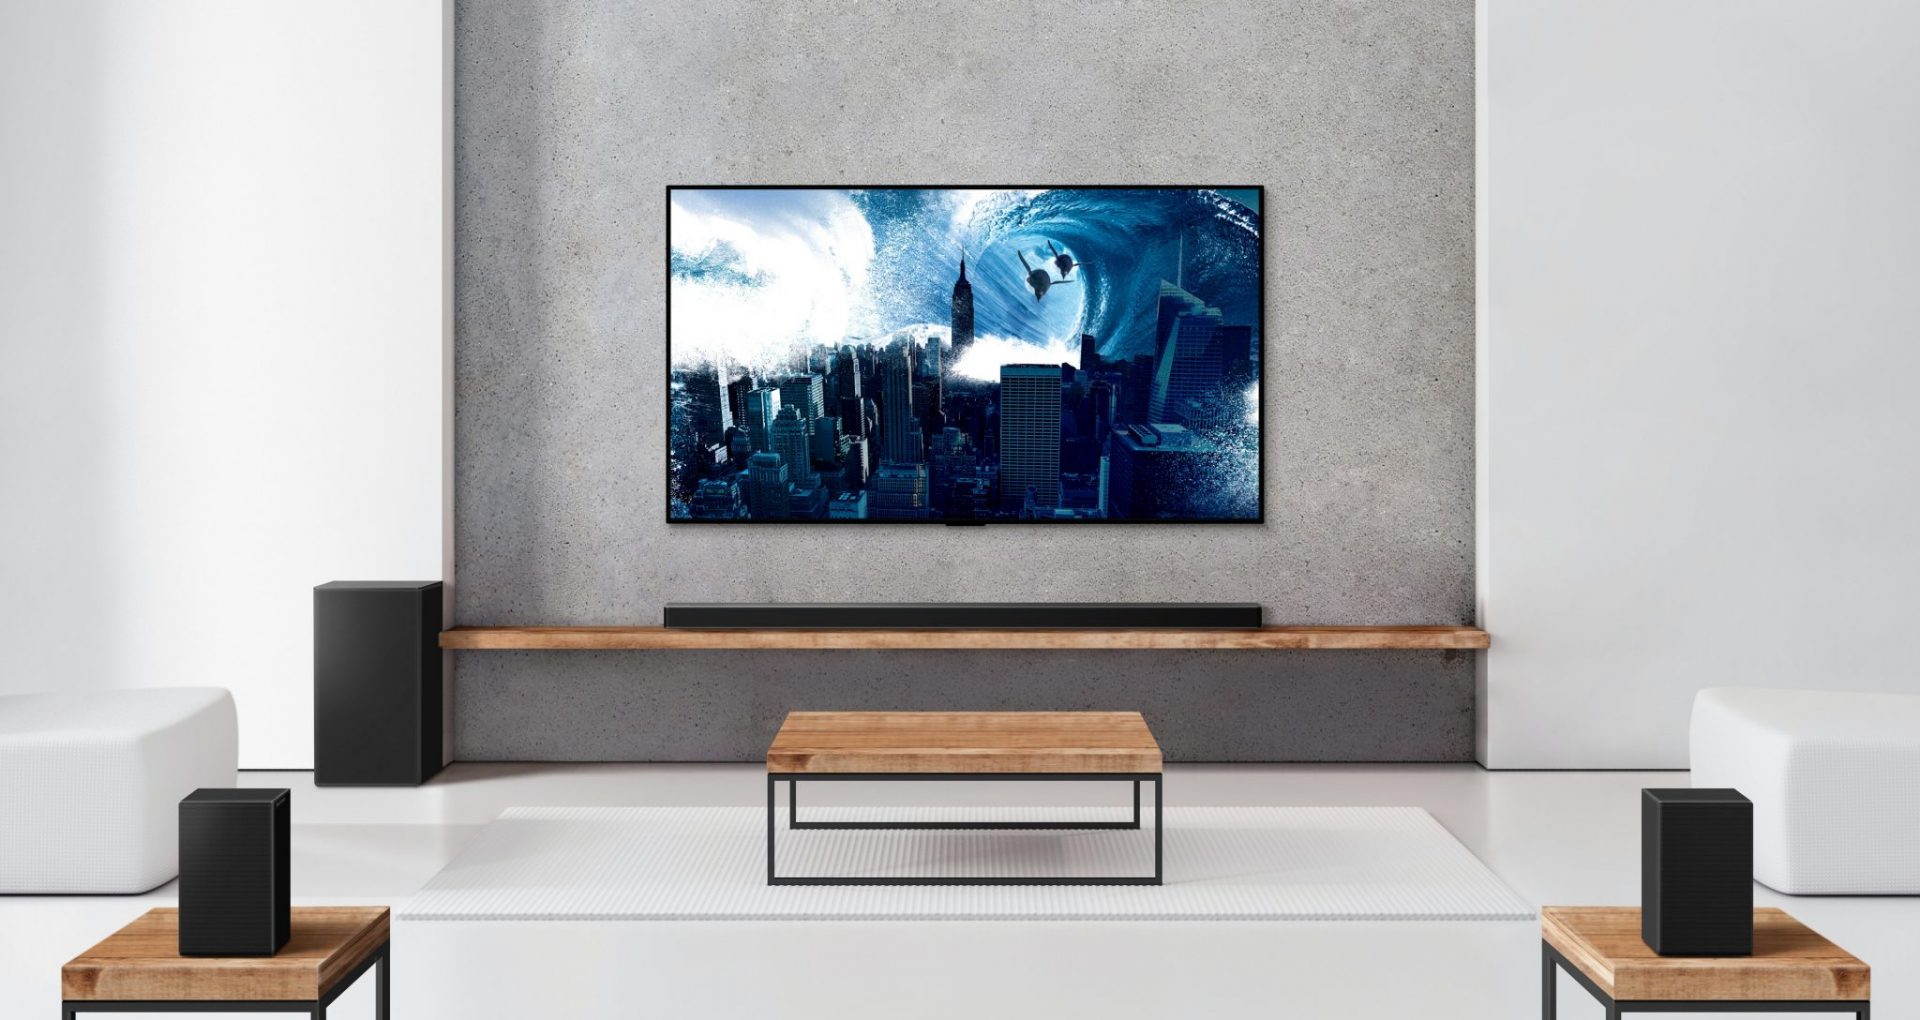 LG’s nye soundbars arbejder bedre sammen med TV’et